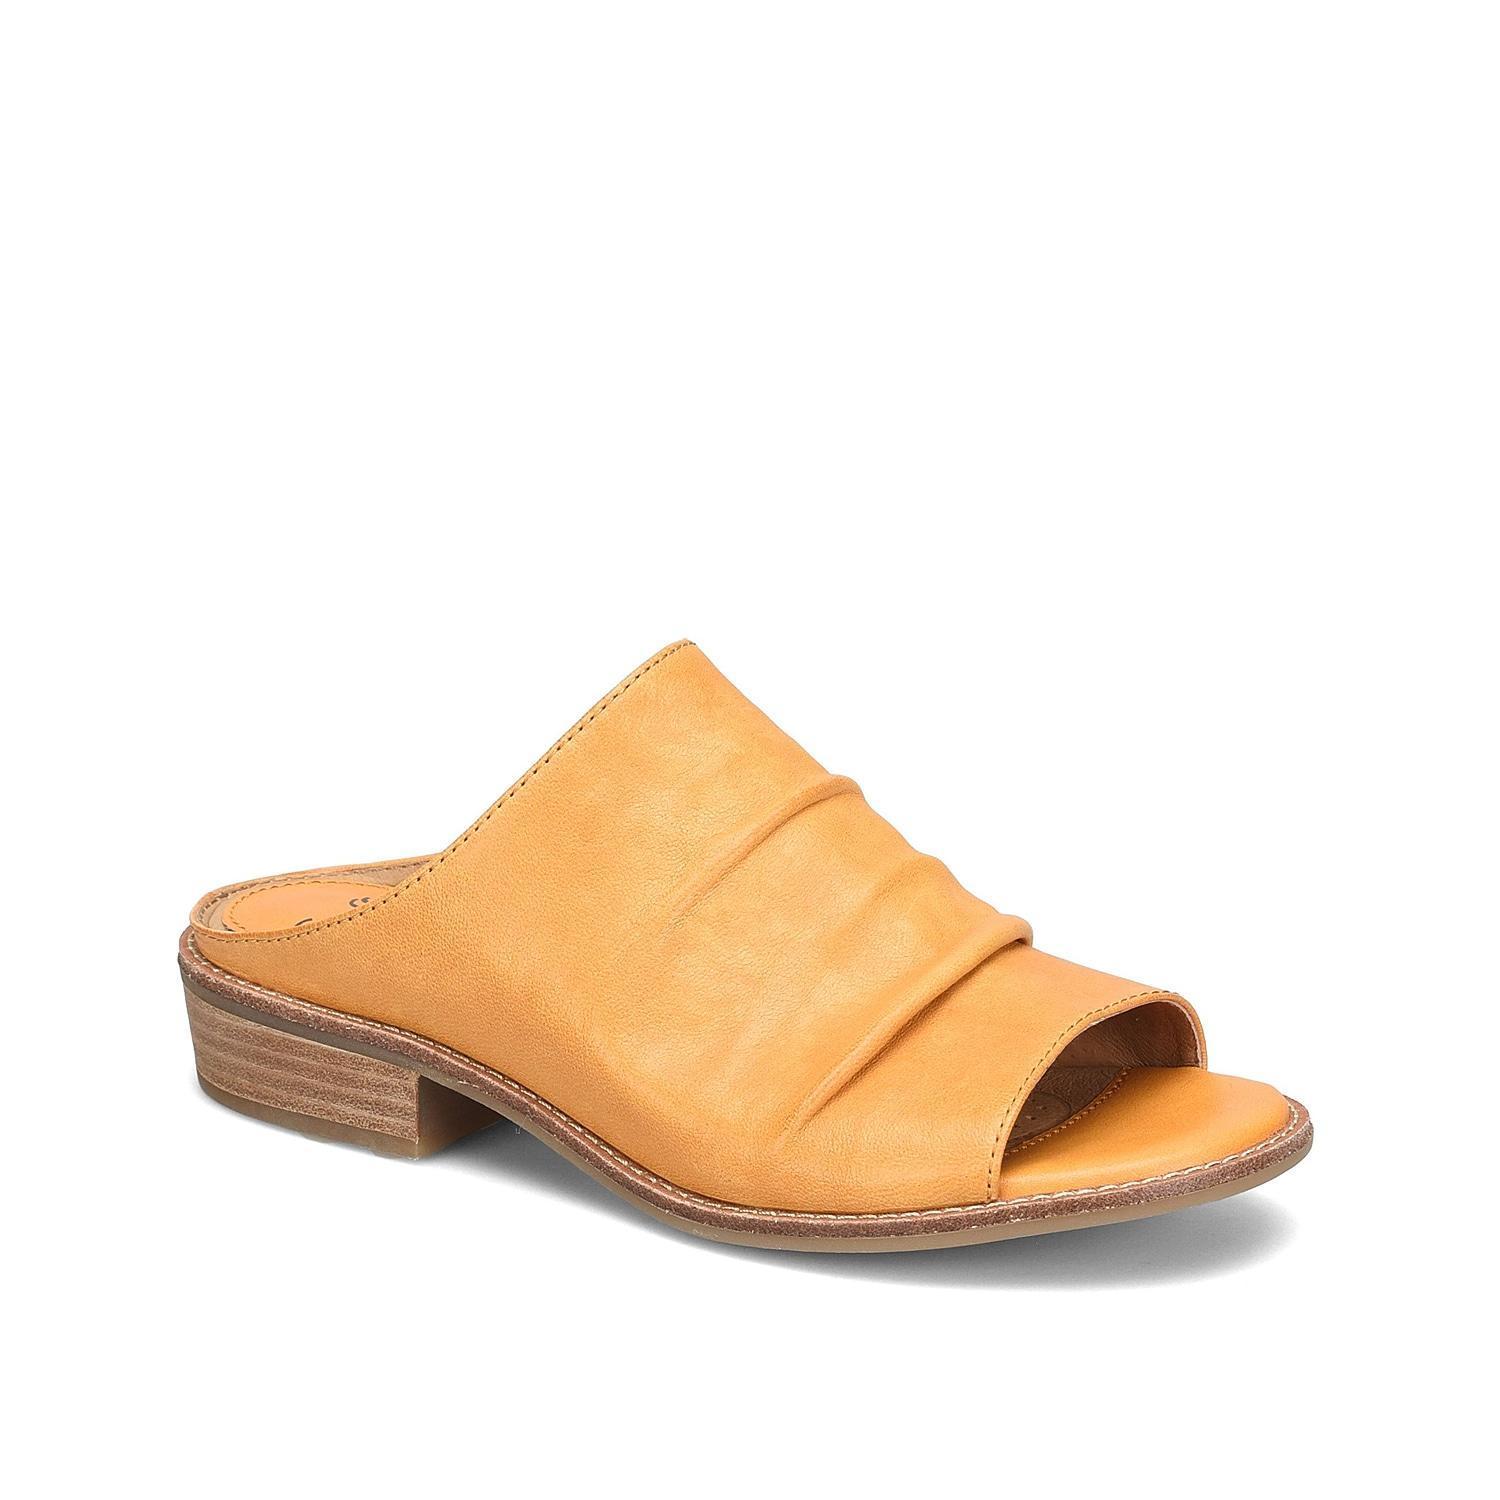 Sfft Netta Slide Sandal Product Image